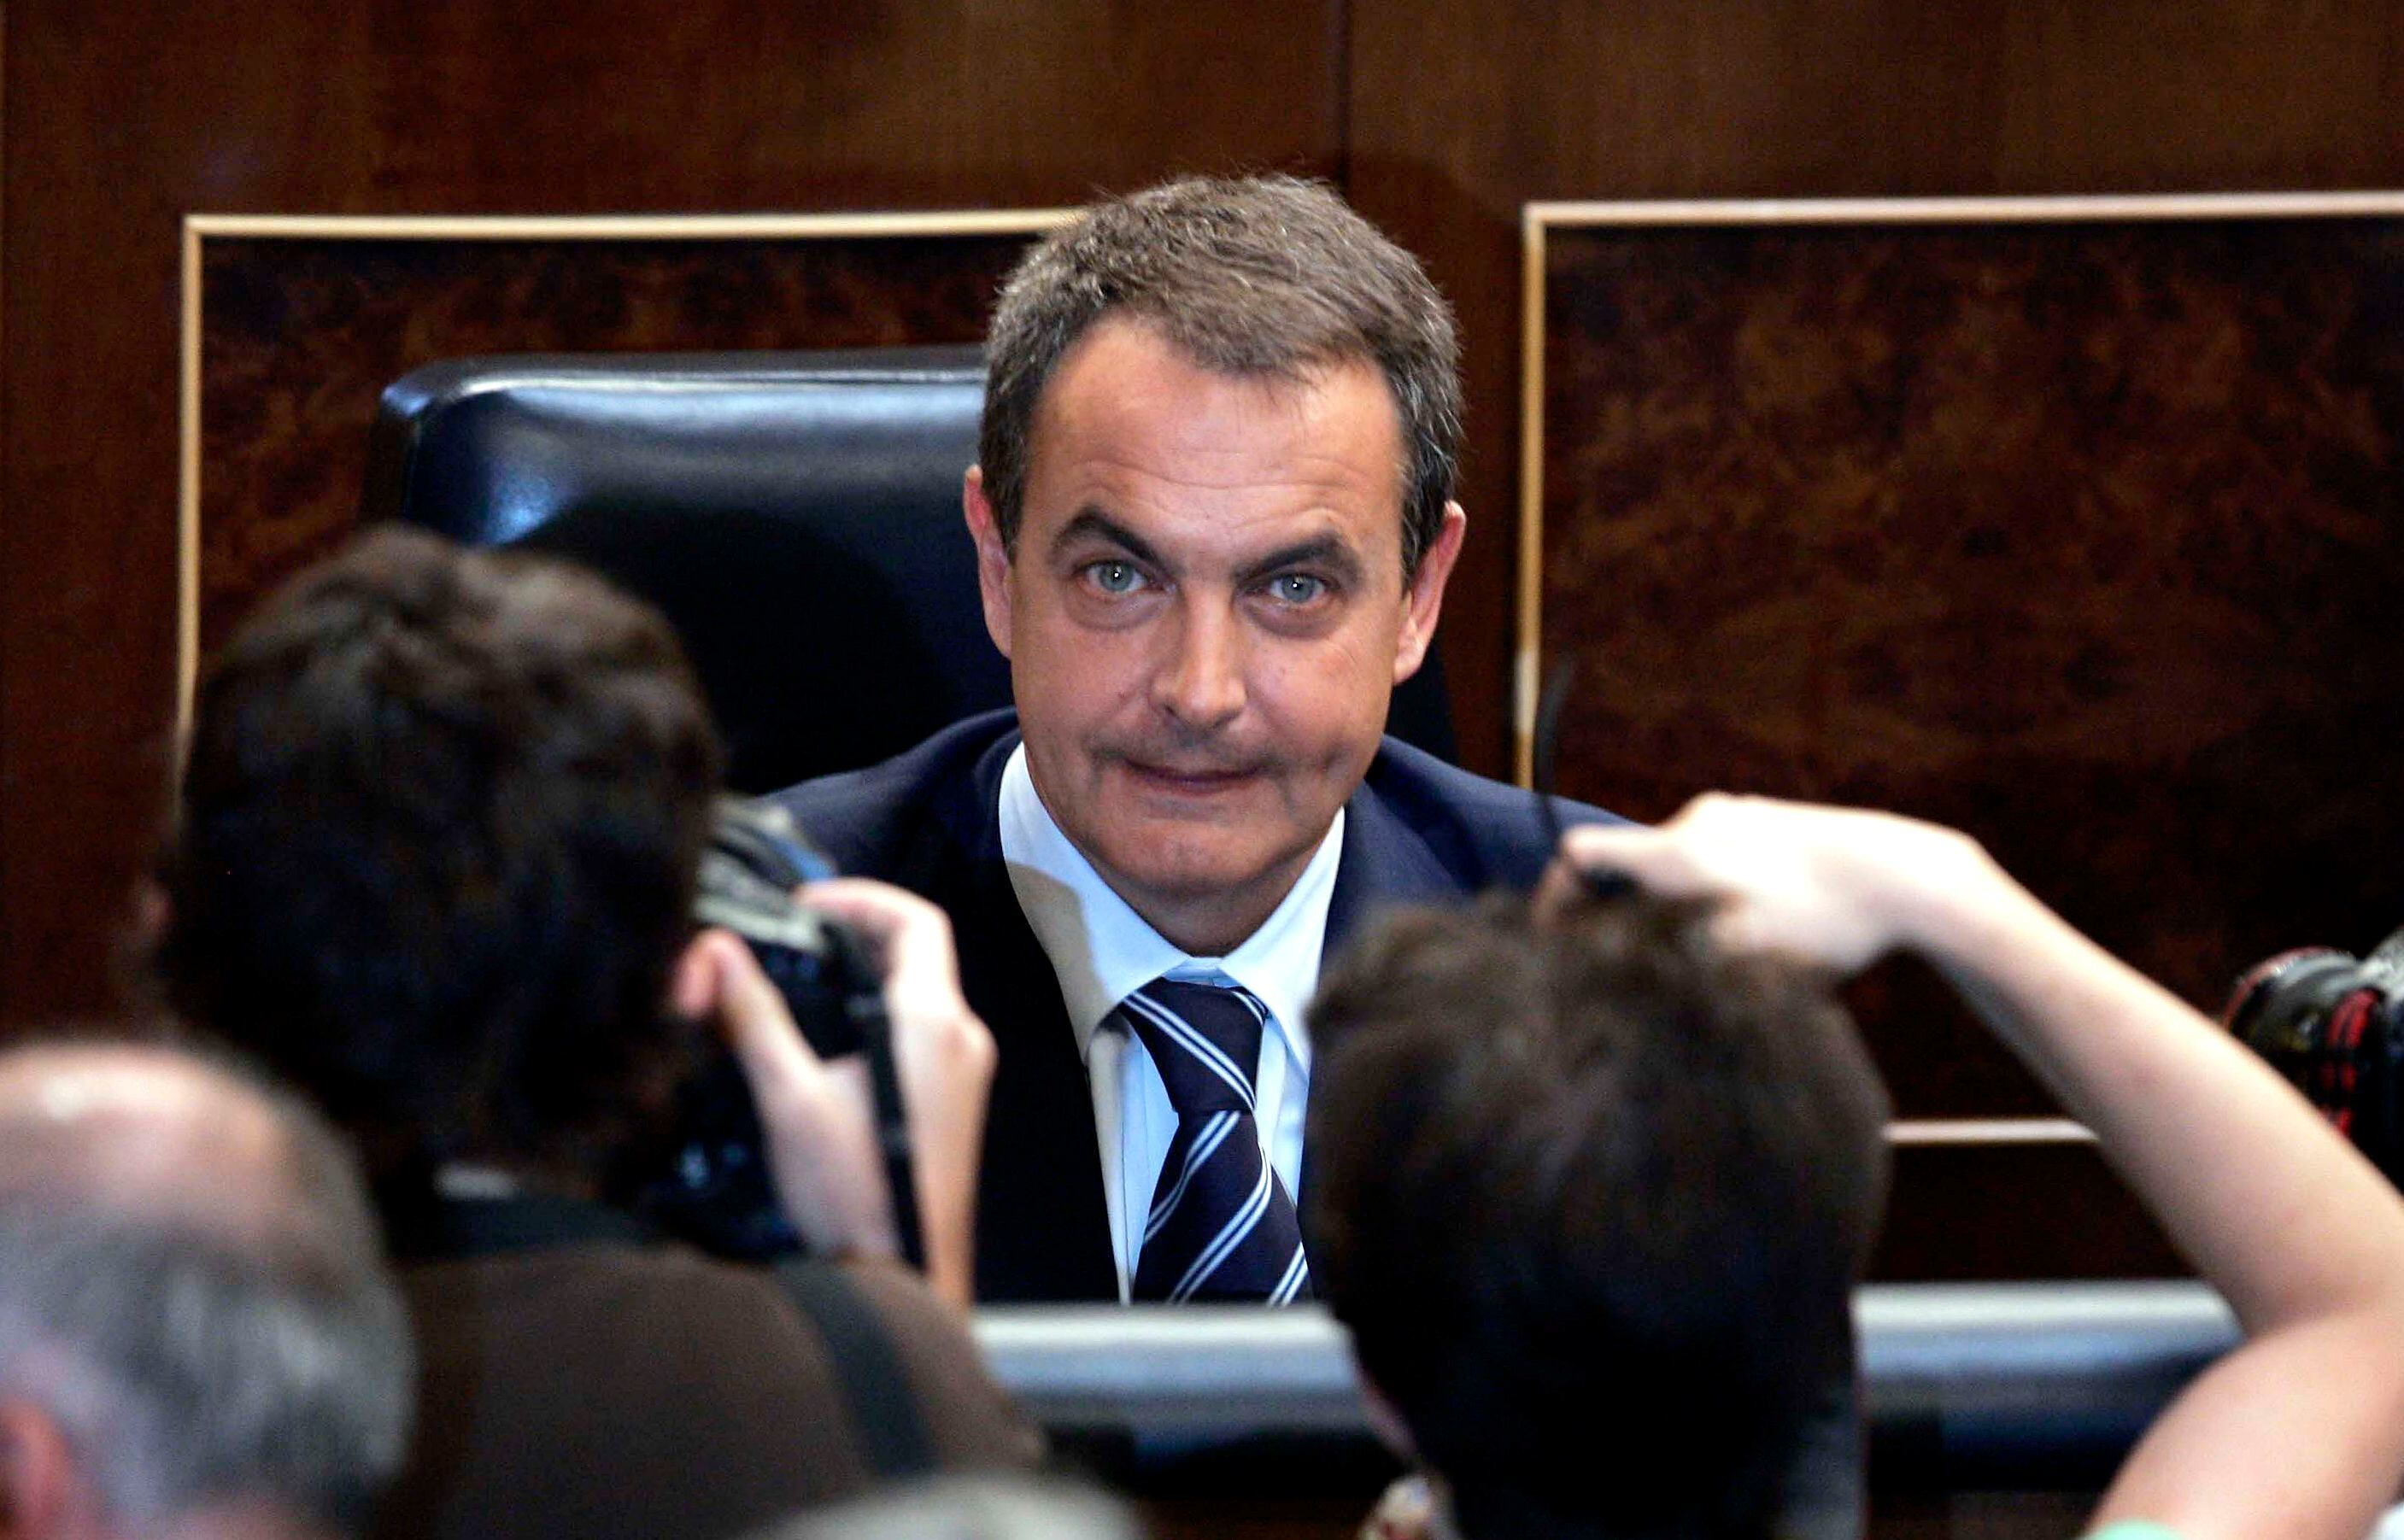 Los fotógrafos de prensa tomaban imágenes del presidente del Gobierno, José Luis Rodríguez Zapatero, antes de comenzar el debate sobre el estado de la nación, en 2007.